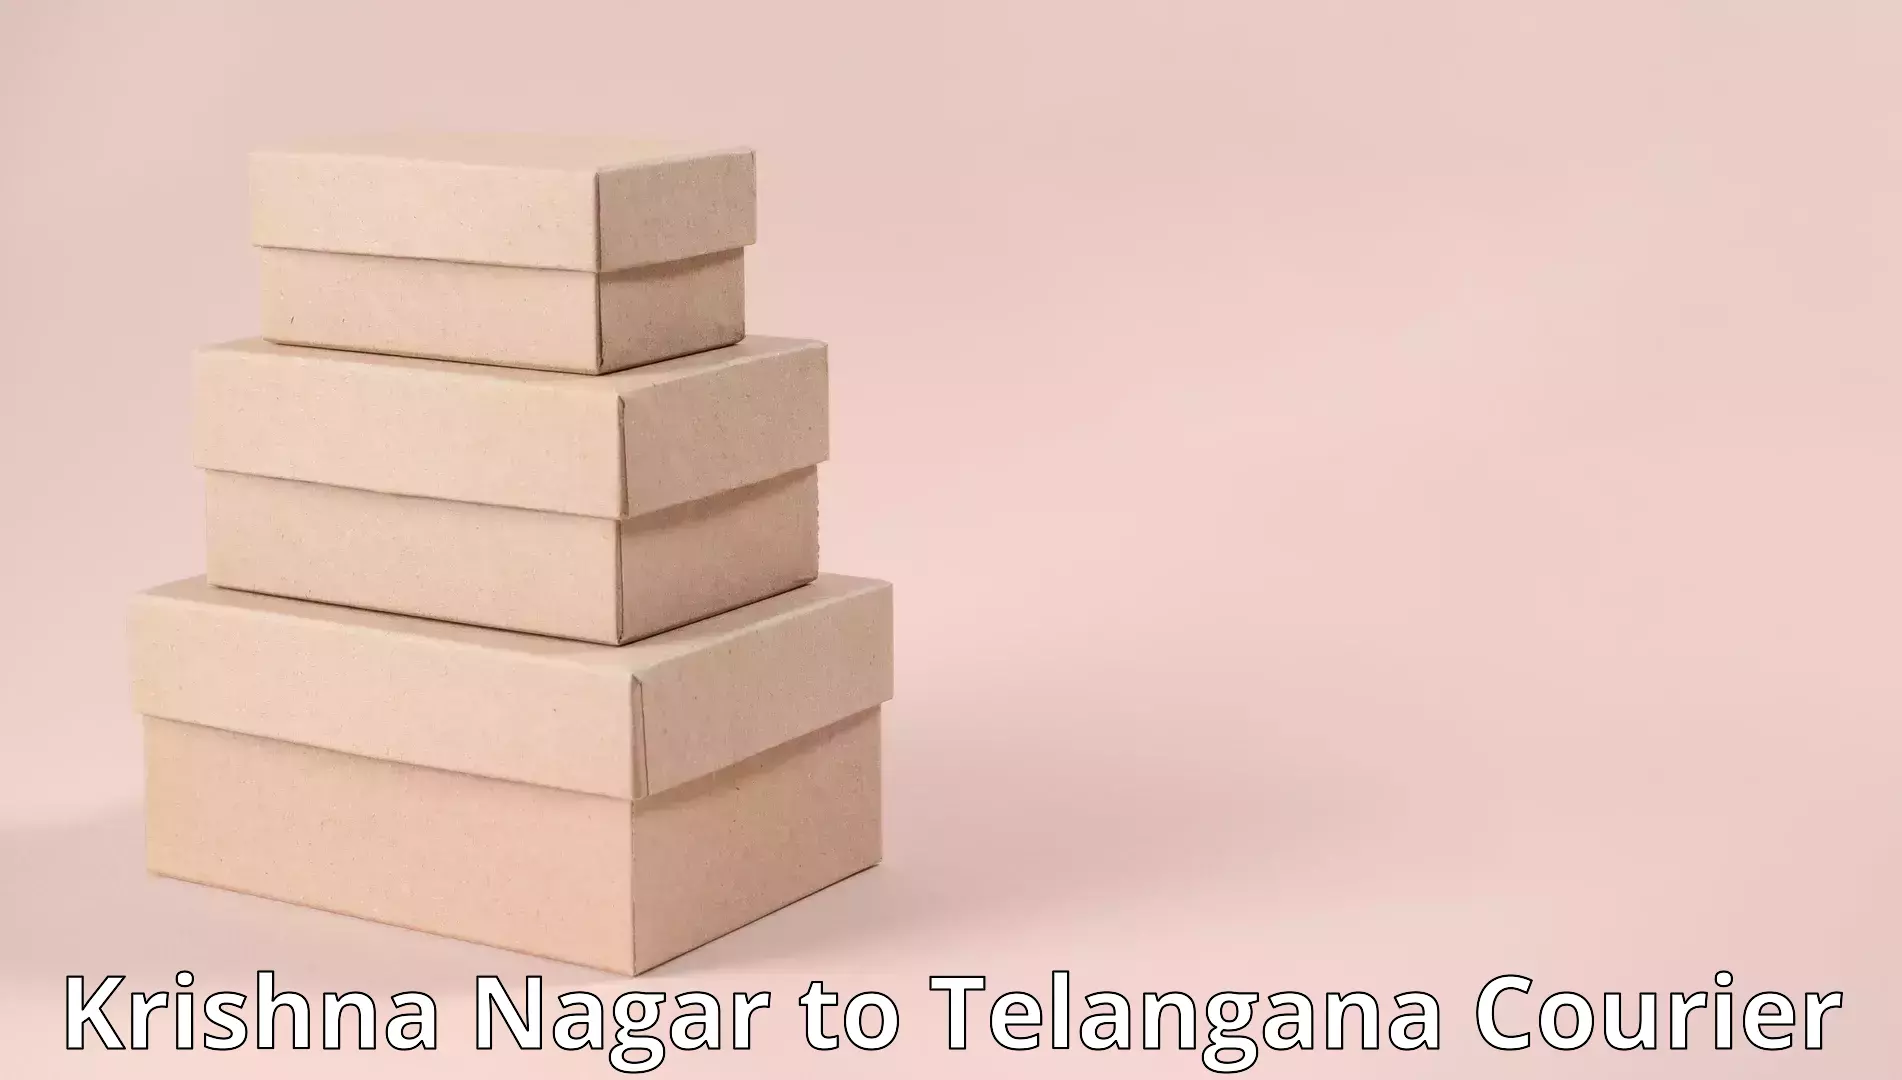 Moving and handling services Krishna Nagar to Telangana